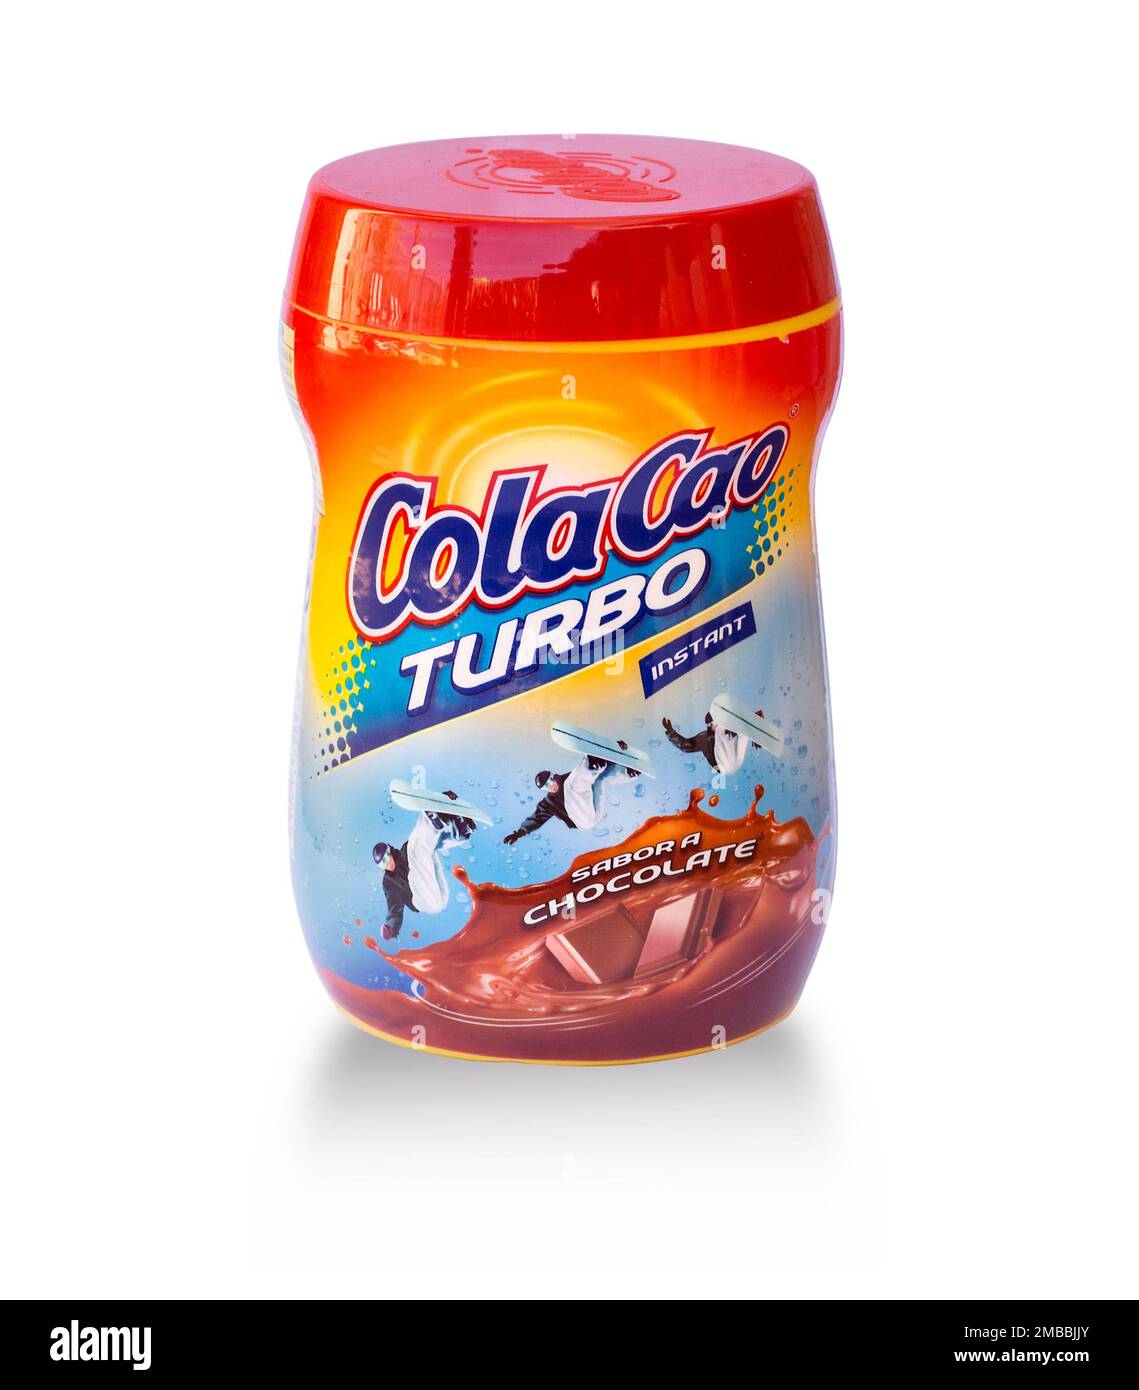 ColaCao Energy — Chocolate Milk Reviews